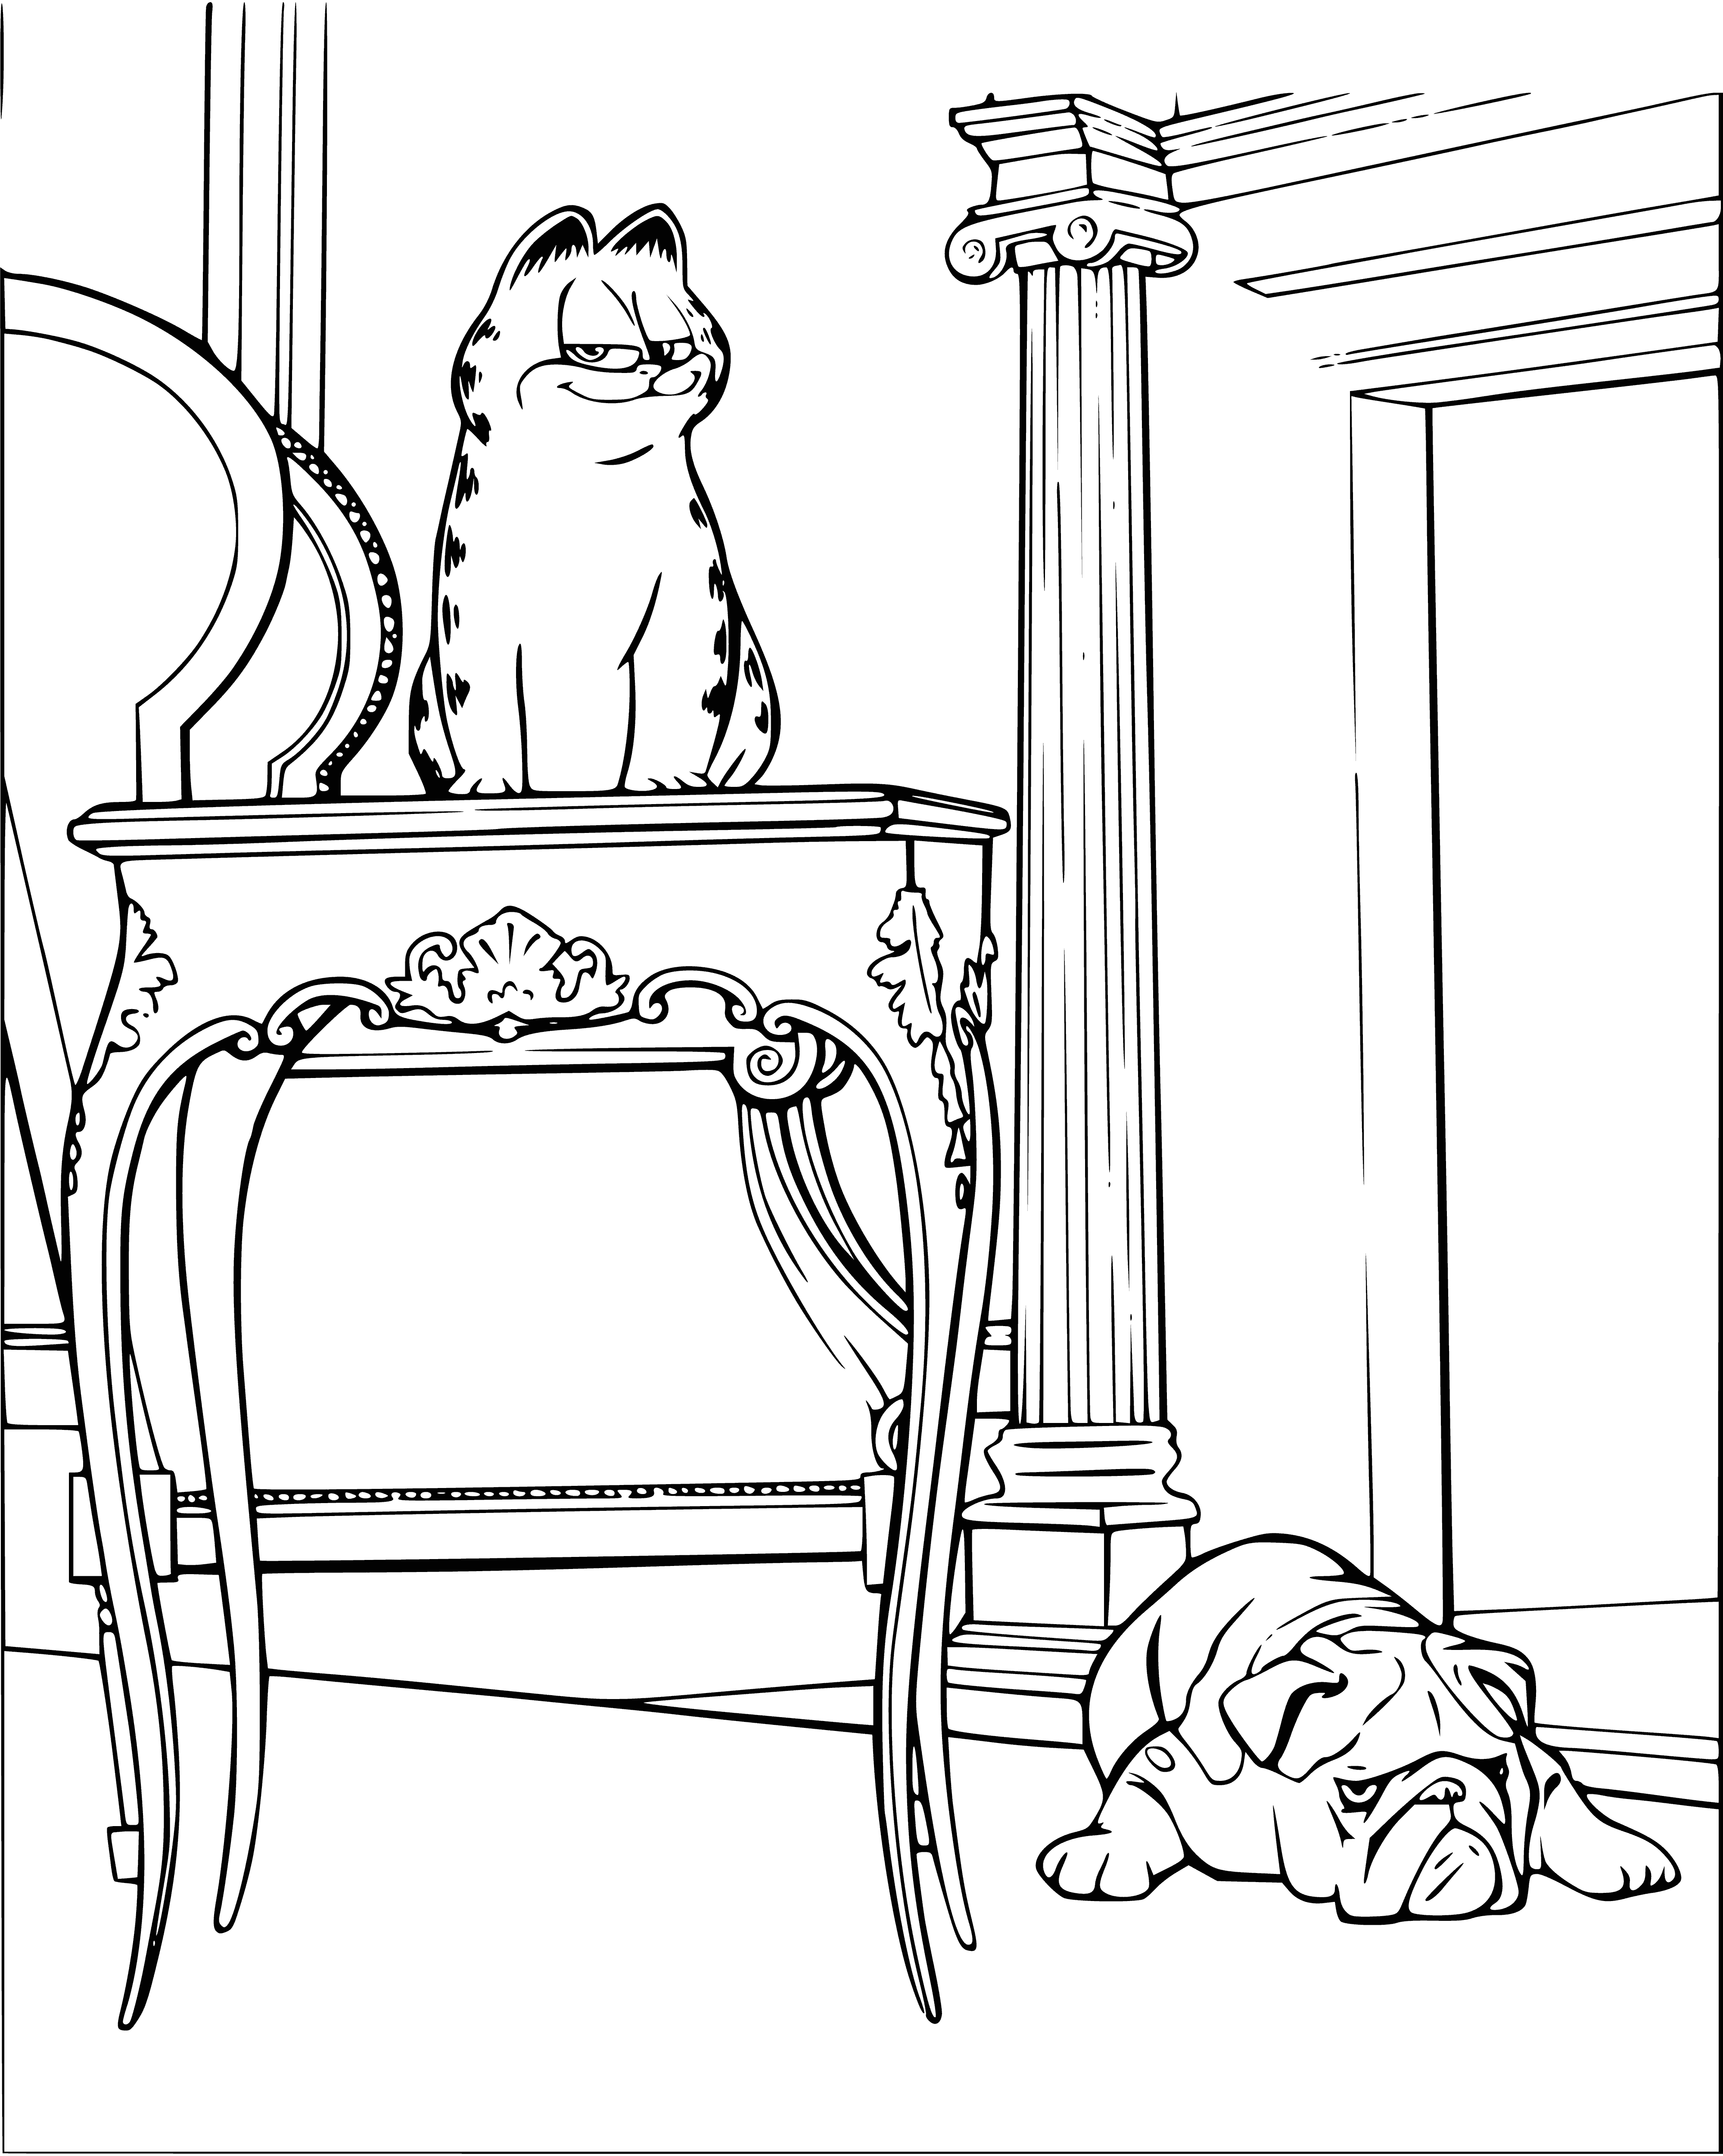 Garfield et le chien coloriage